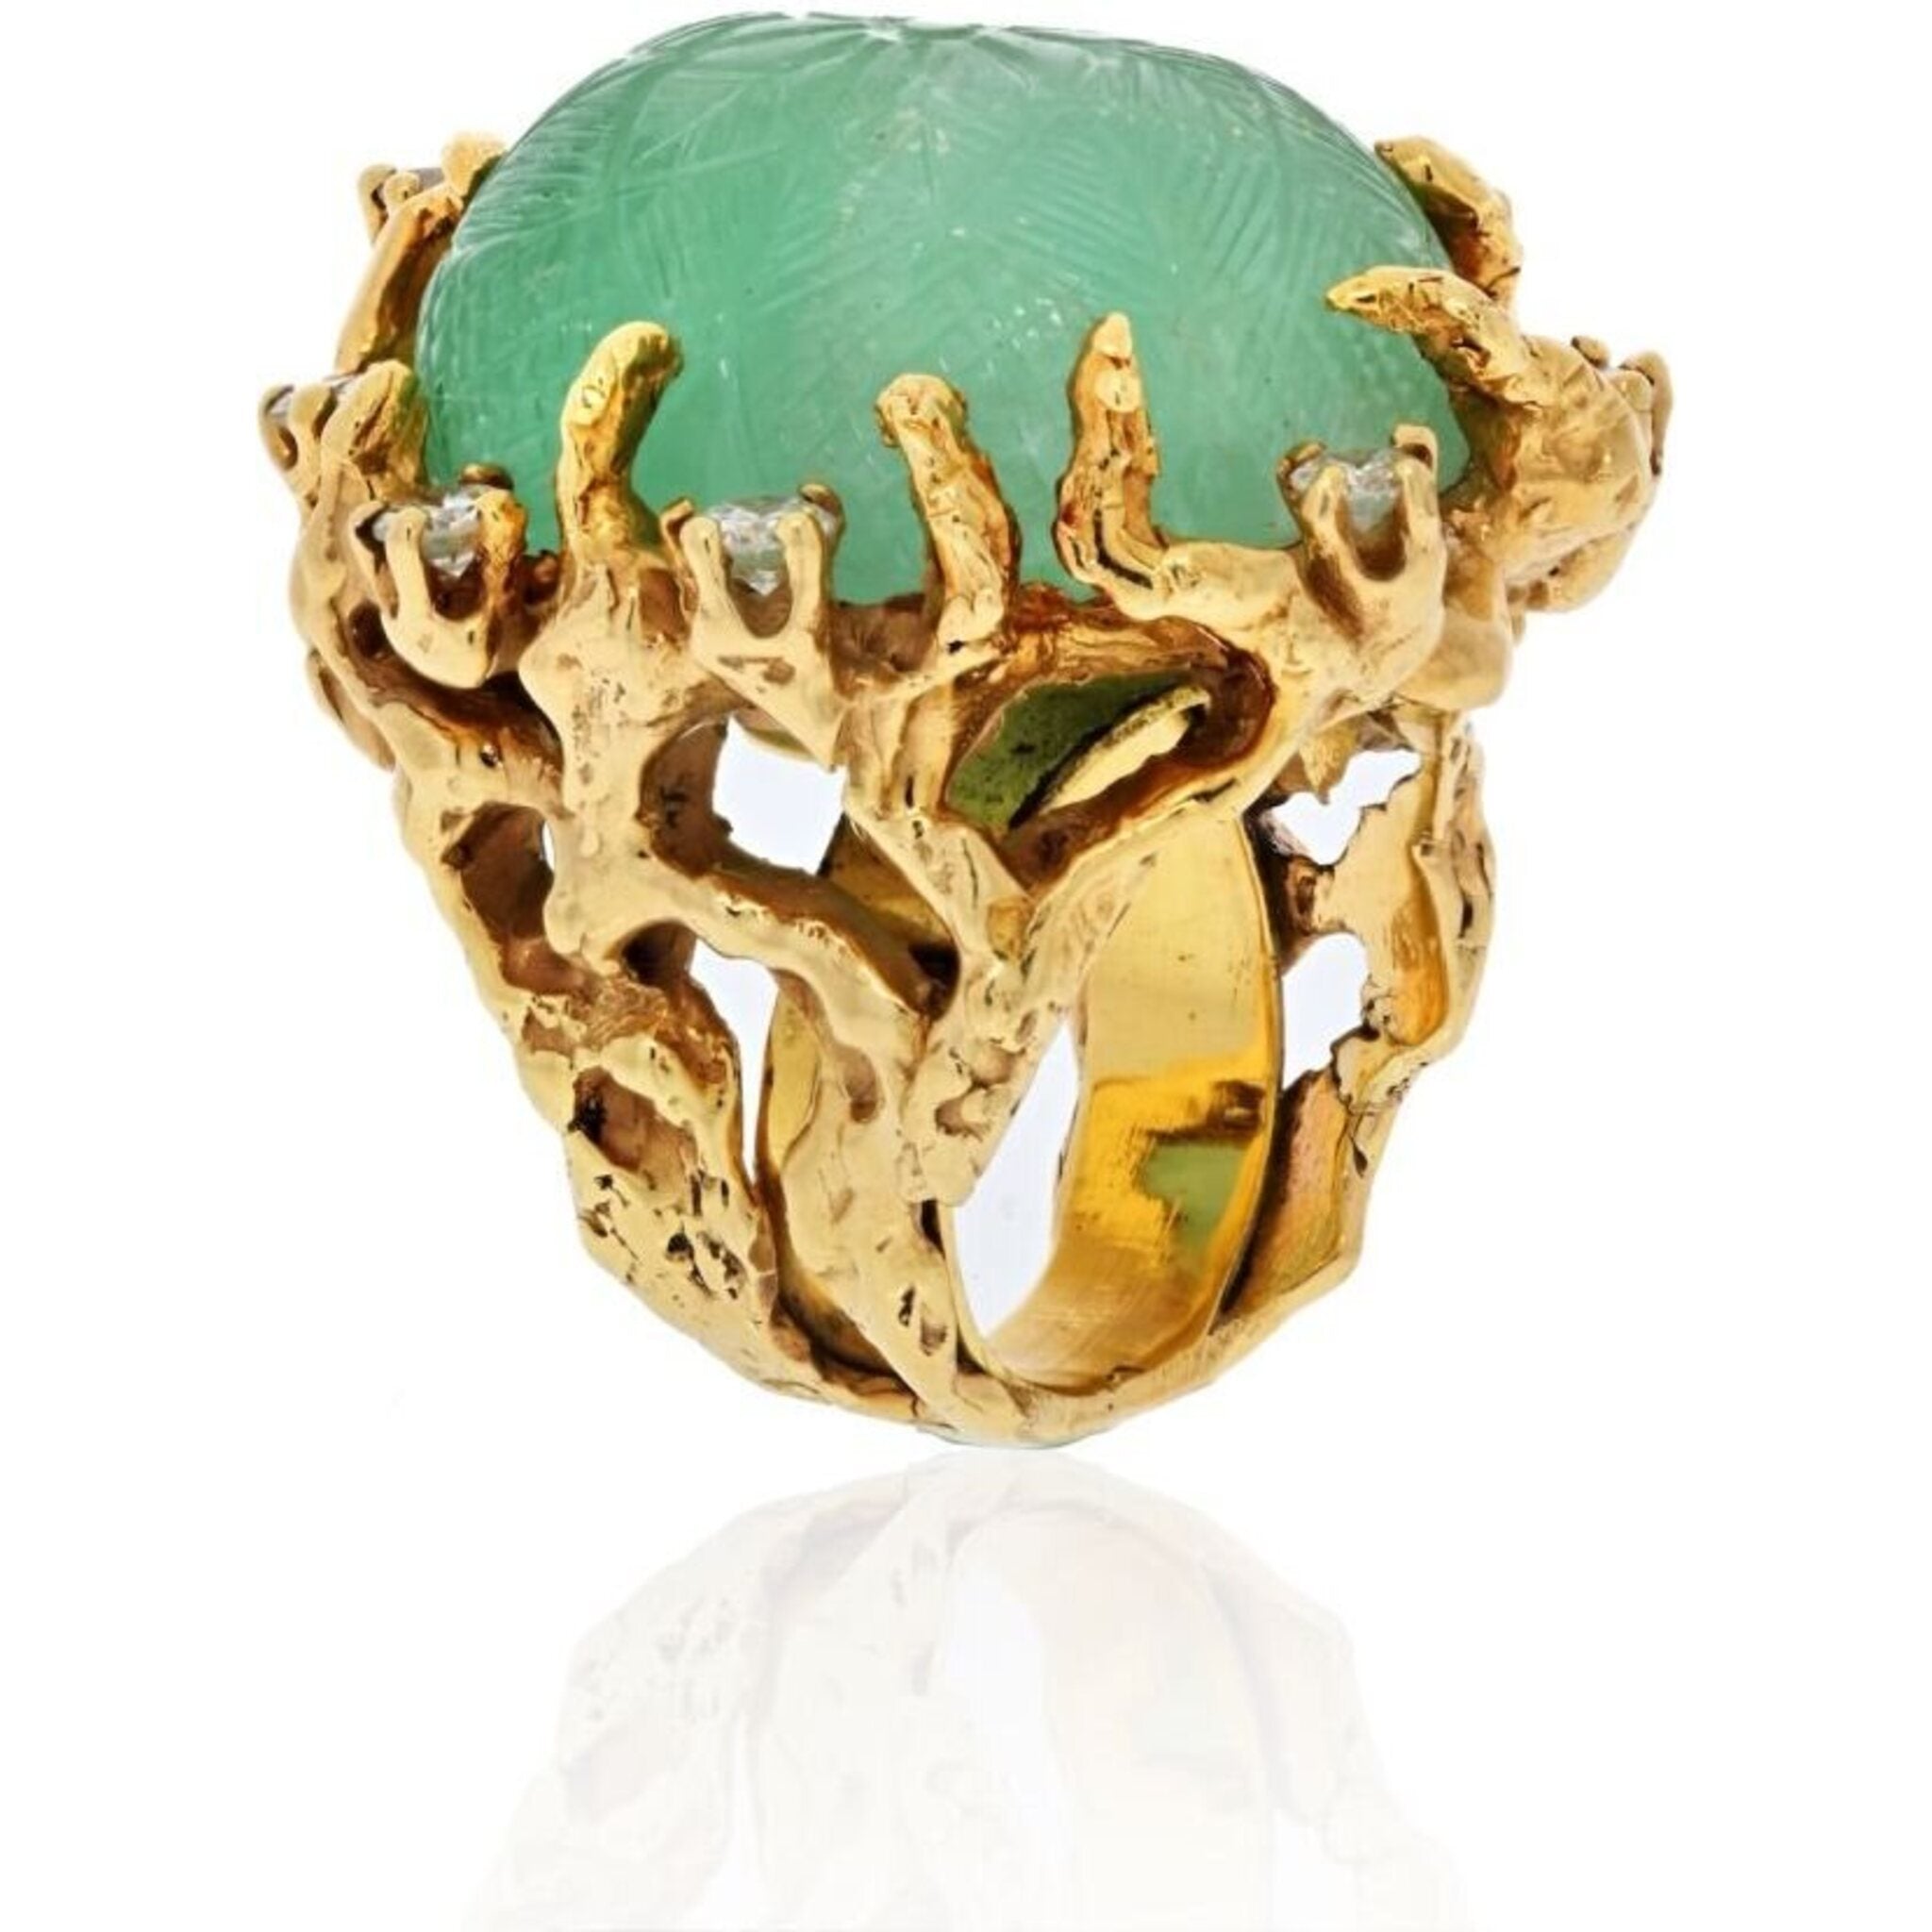 Dubai Gold Color Rings For Man Women King ring | Gold color ring, King ring,  Rings for men